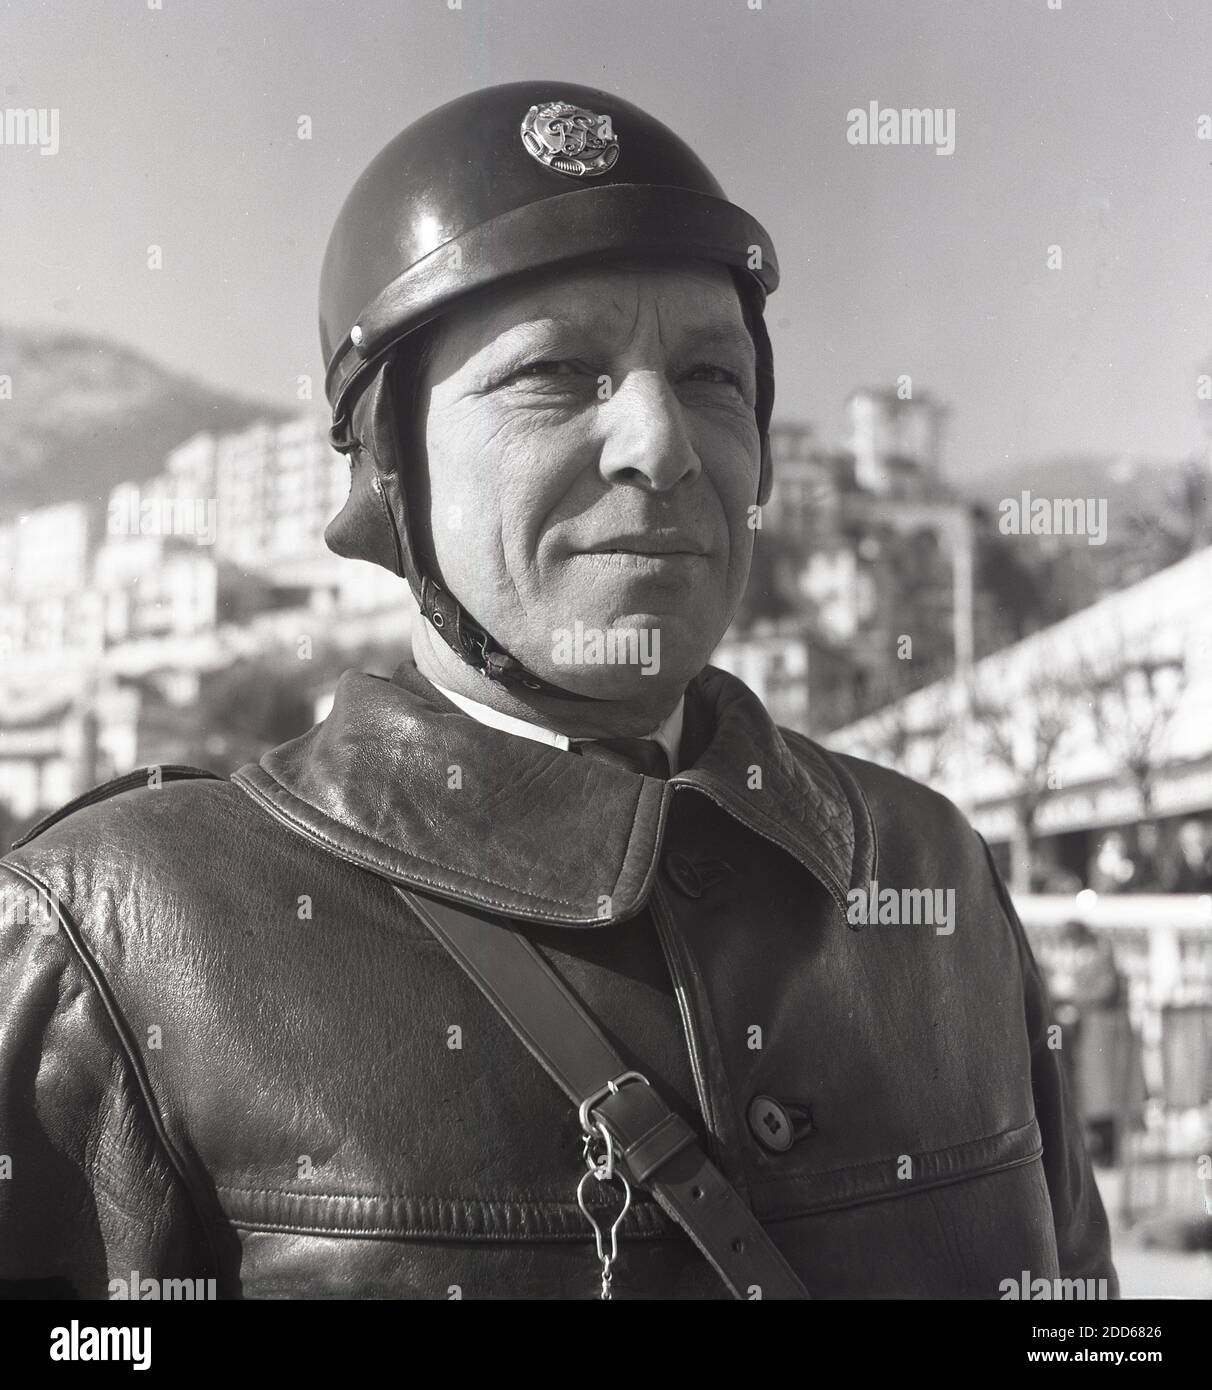 Années 1950, historique, Monte-Carlo, un gros plan de J Allan Cash d'un officier de police de moto Monaco dans sa veste en cuir épaisse, militaire dans le style et portant un casque rond de l'époque, avec le cuir sous la sangle. Banque D'Images